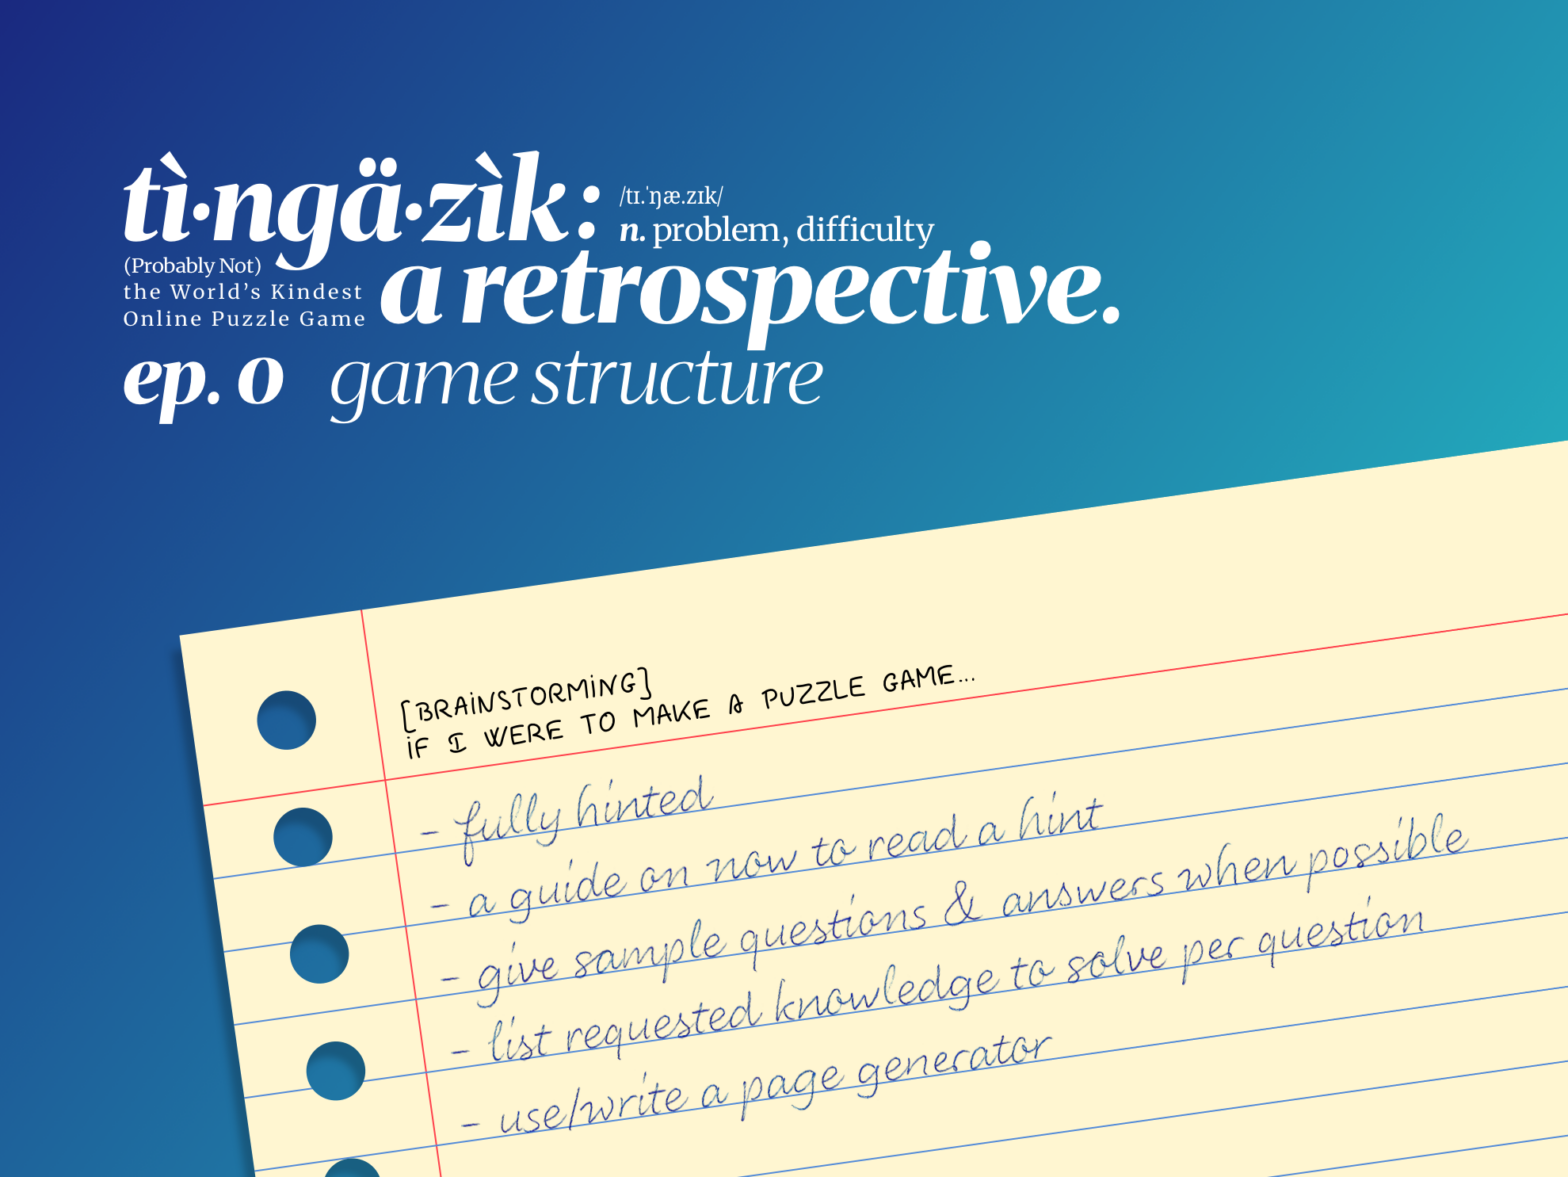 Tìngäzìk: a Retrospective – ep. 0 Game Structure